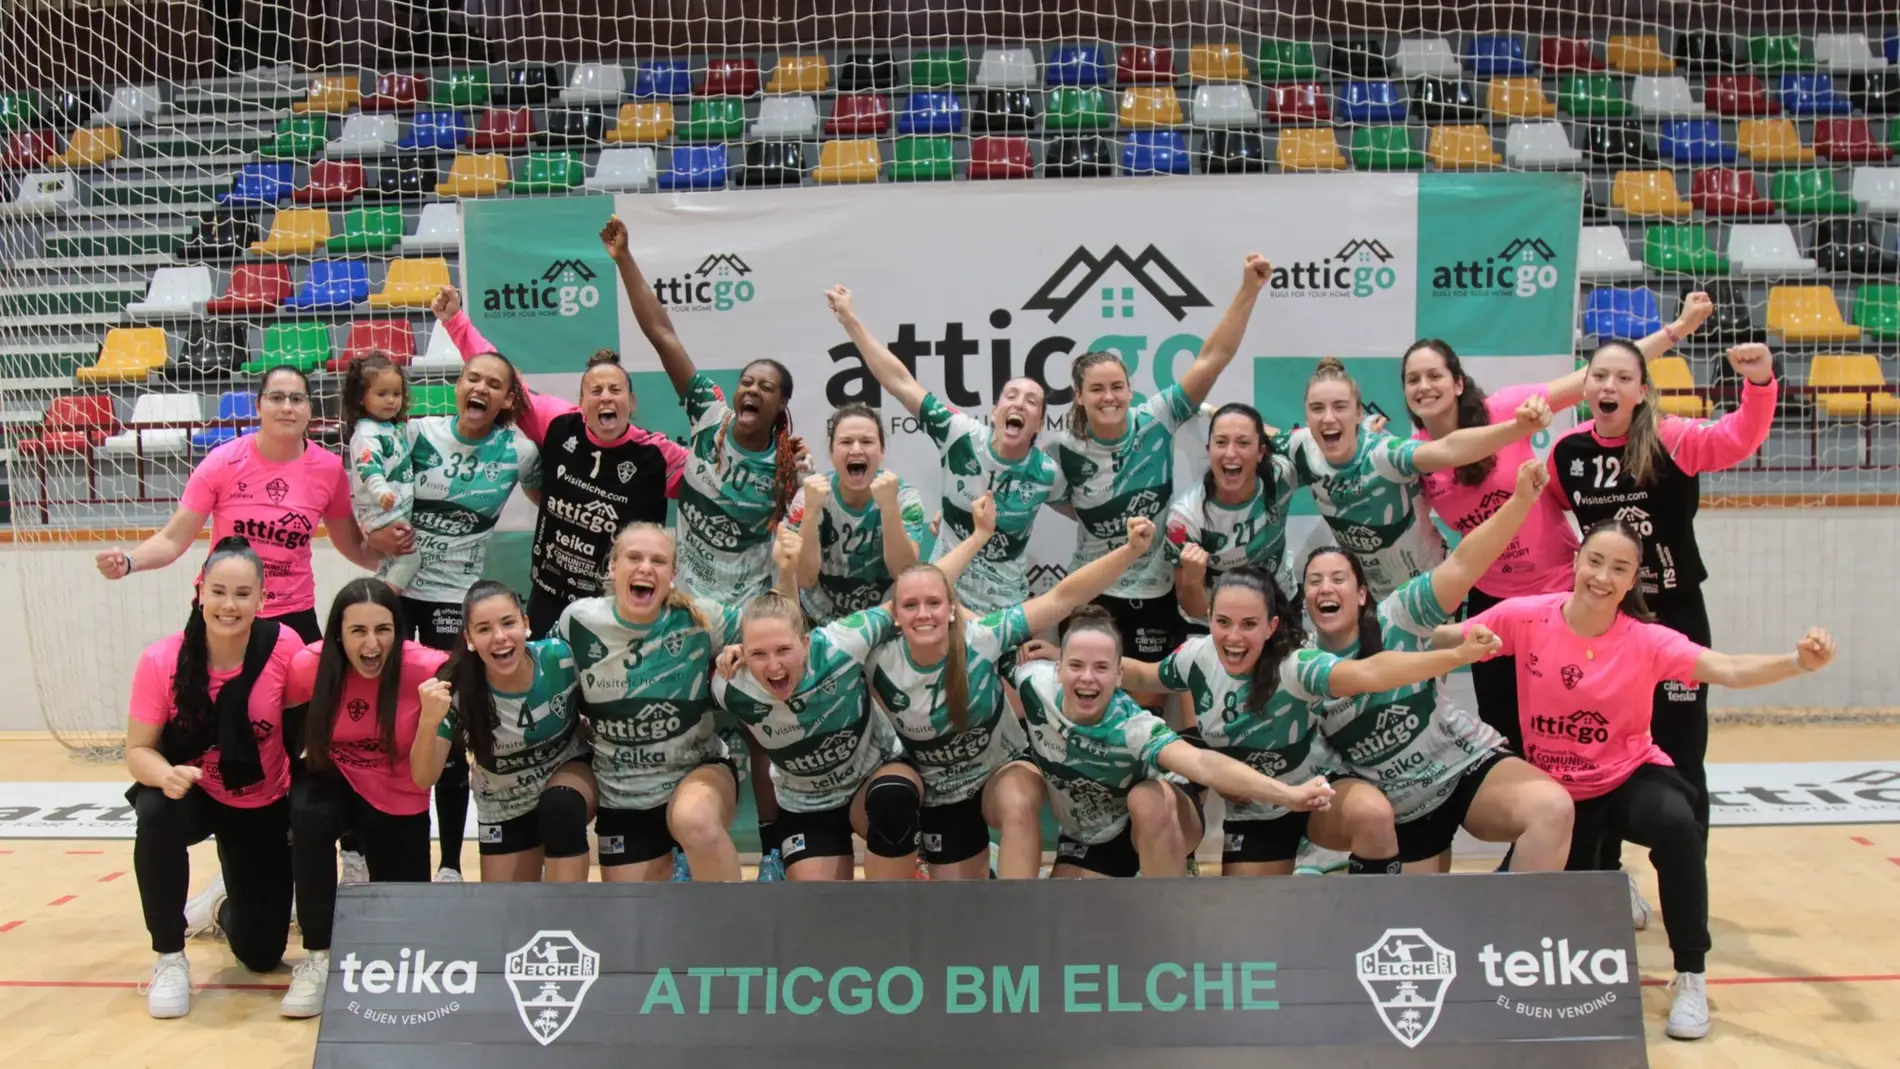 La plantilla del Atticgo Club Balonmano Elche, campeona de la EHF European Cup